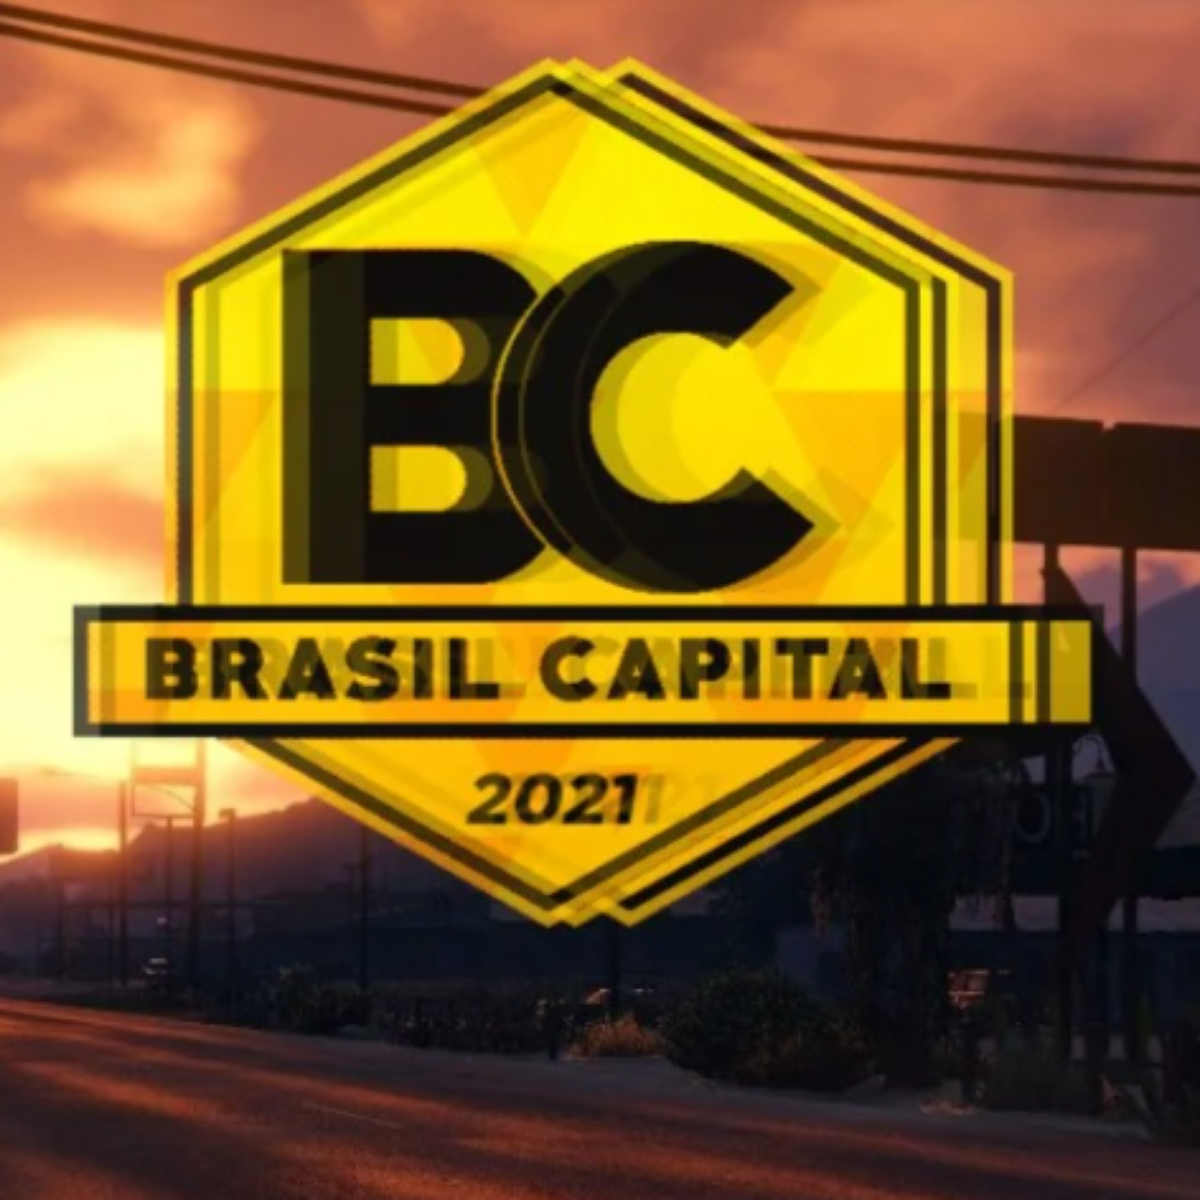 GTA V Roleplay Brasil - FiveM Divulgação